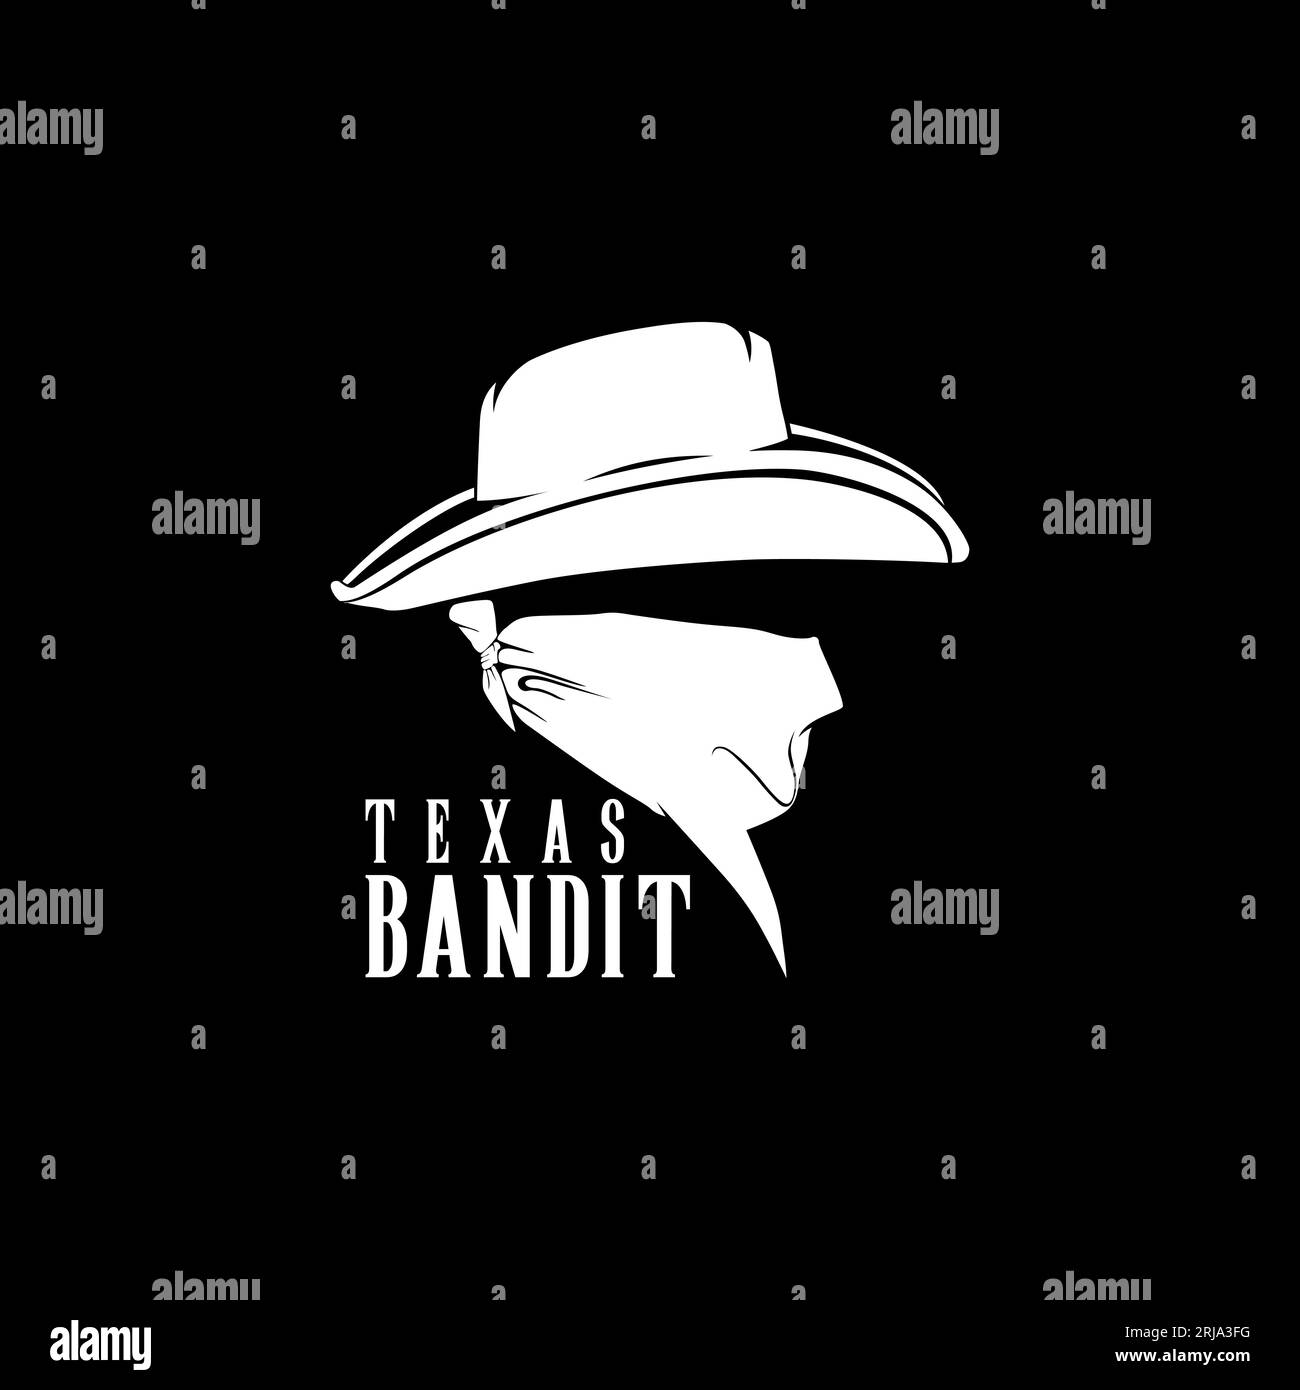 Bandit cowboy Gangster symbol logo design inspiration Stock Vector